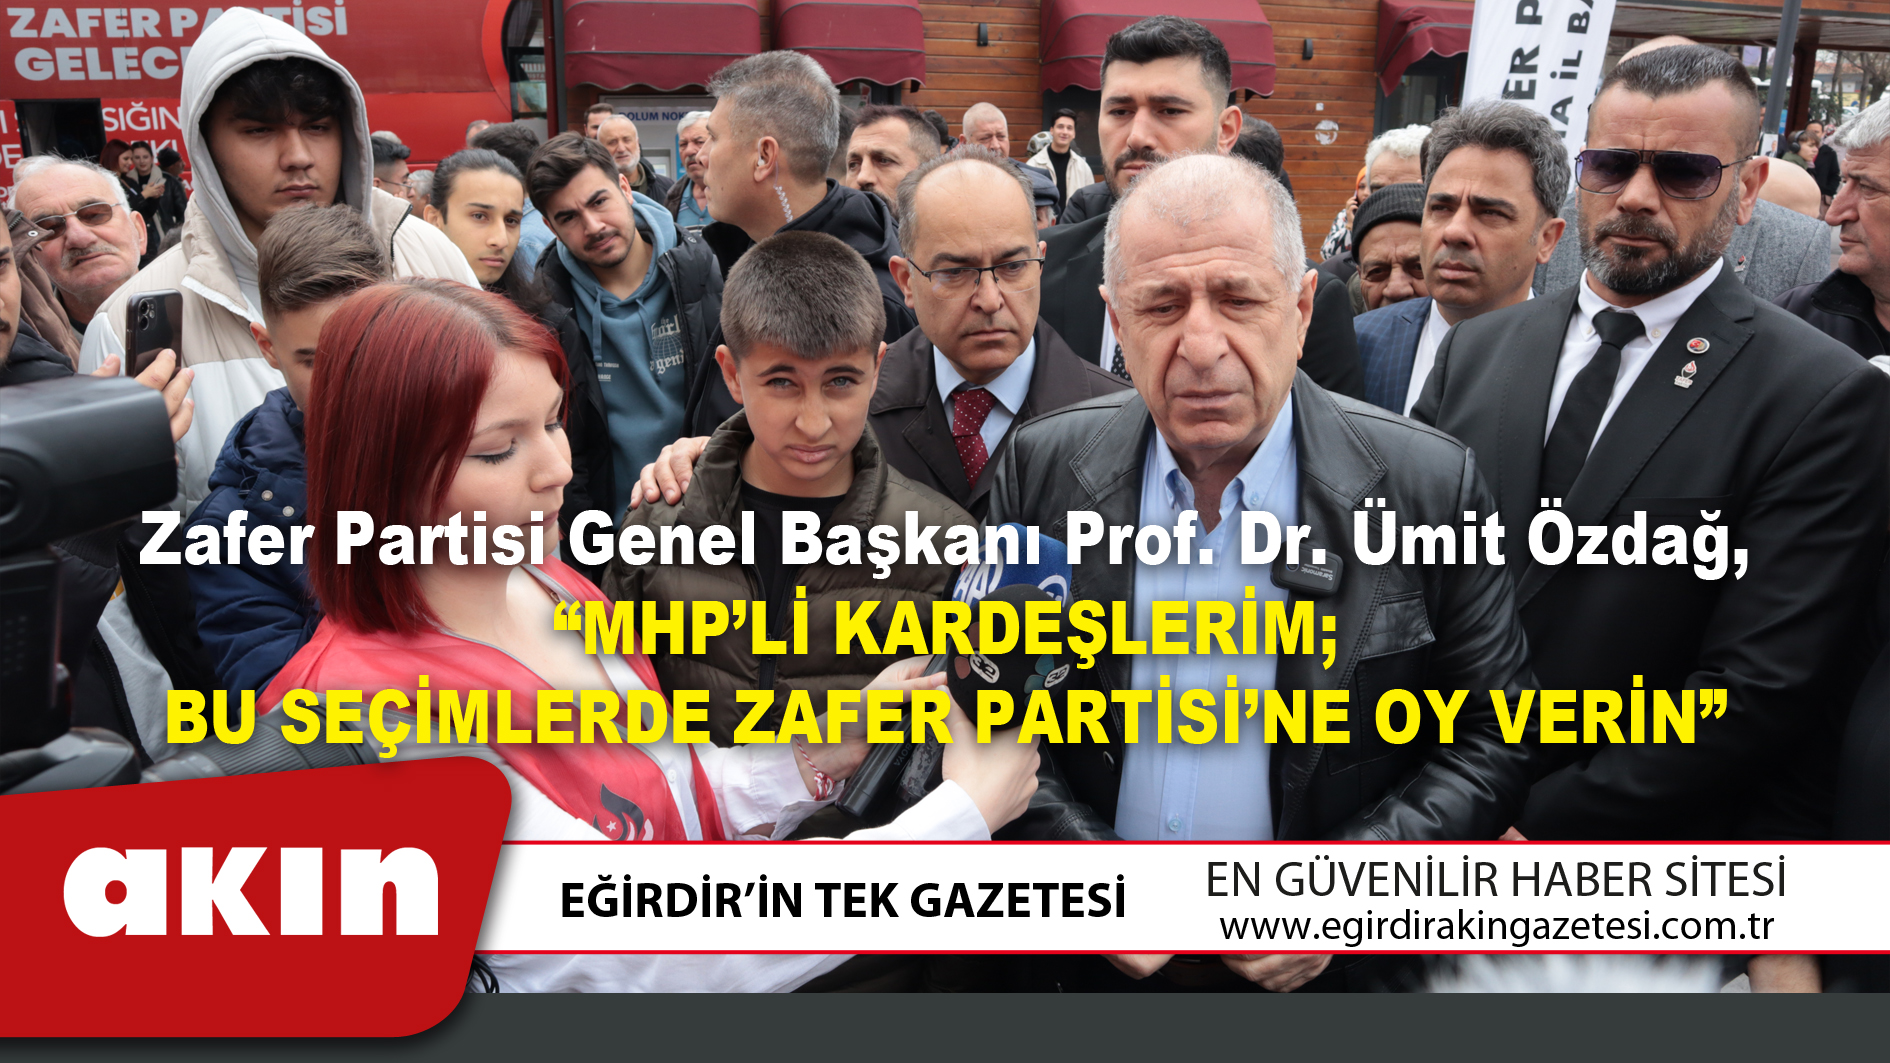 Zafer Partisi Genel Başkanı Prof. Dr. Ümit Özdağ, Isparta’da basın açıklaması yaptı